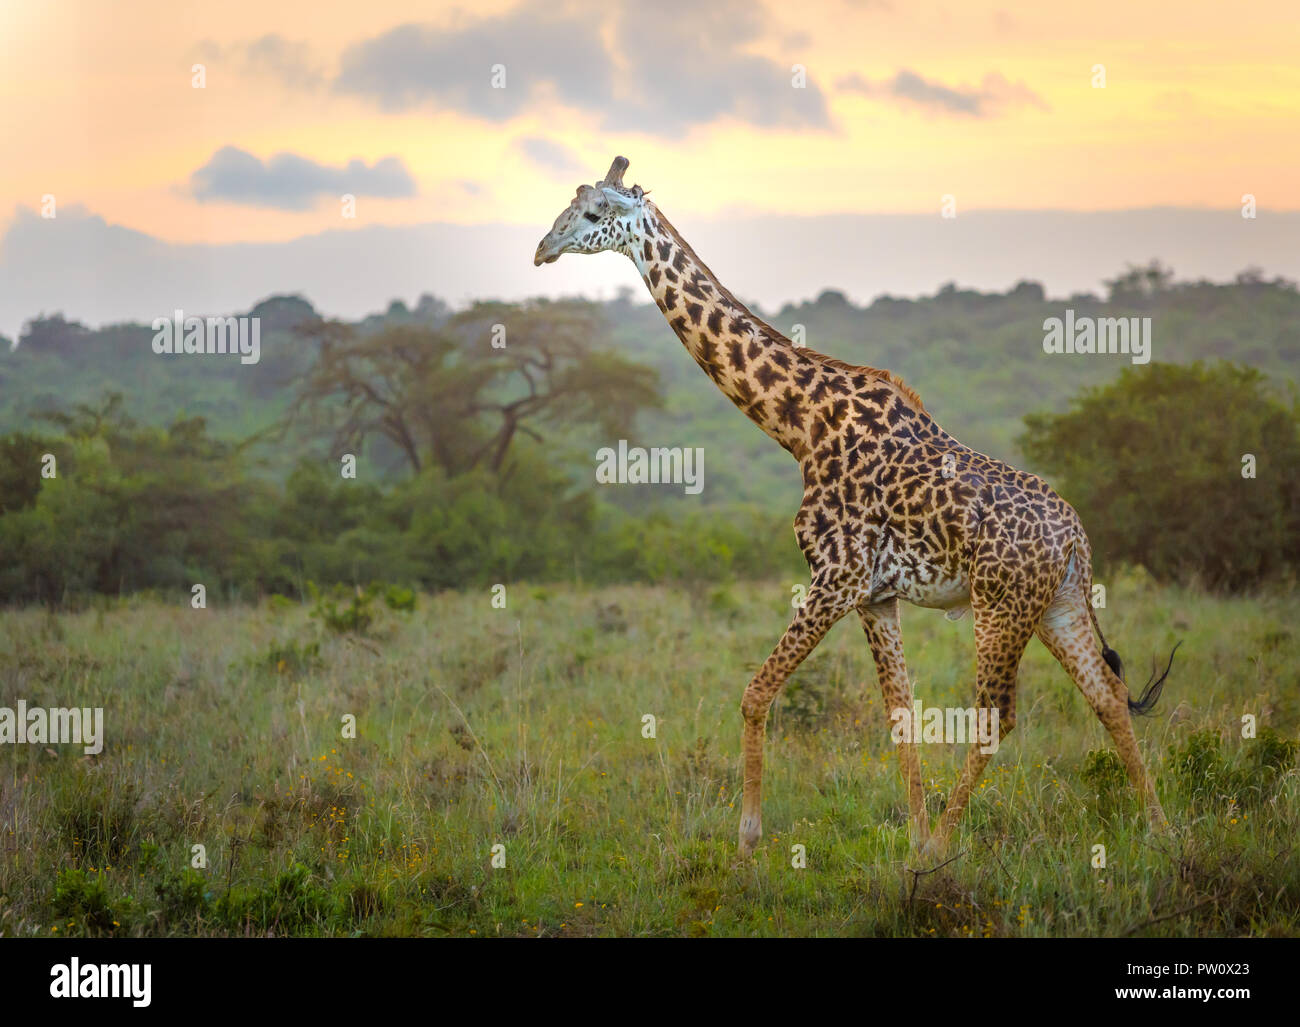 Giraffe in Nairobi city the capital of Kenya. Nairobi national park. Architecture of Nairobi in the background of beautiful giraffe. Stock Photo